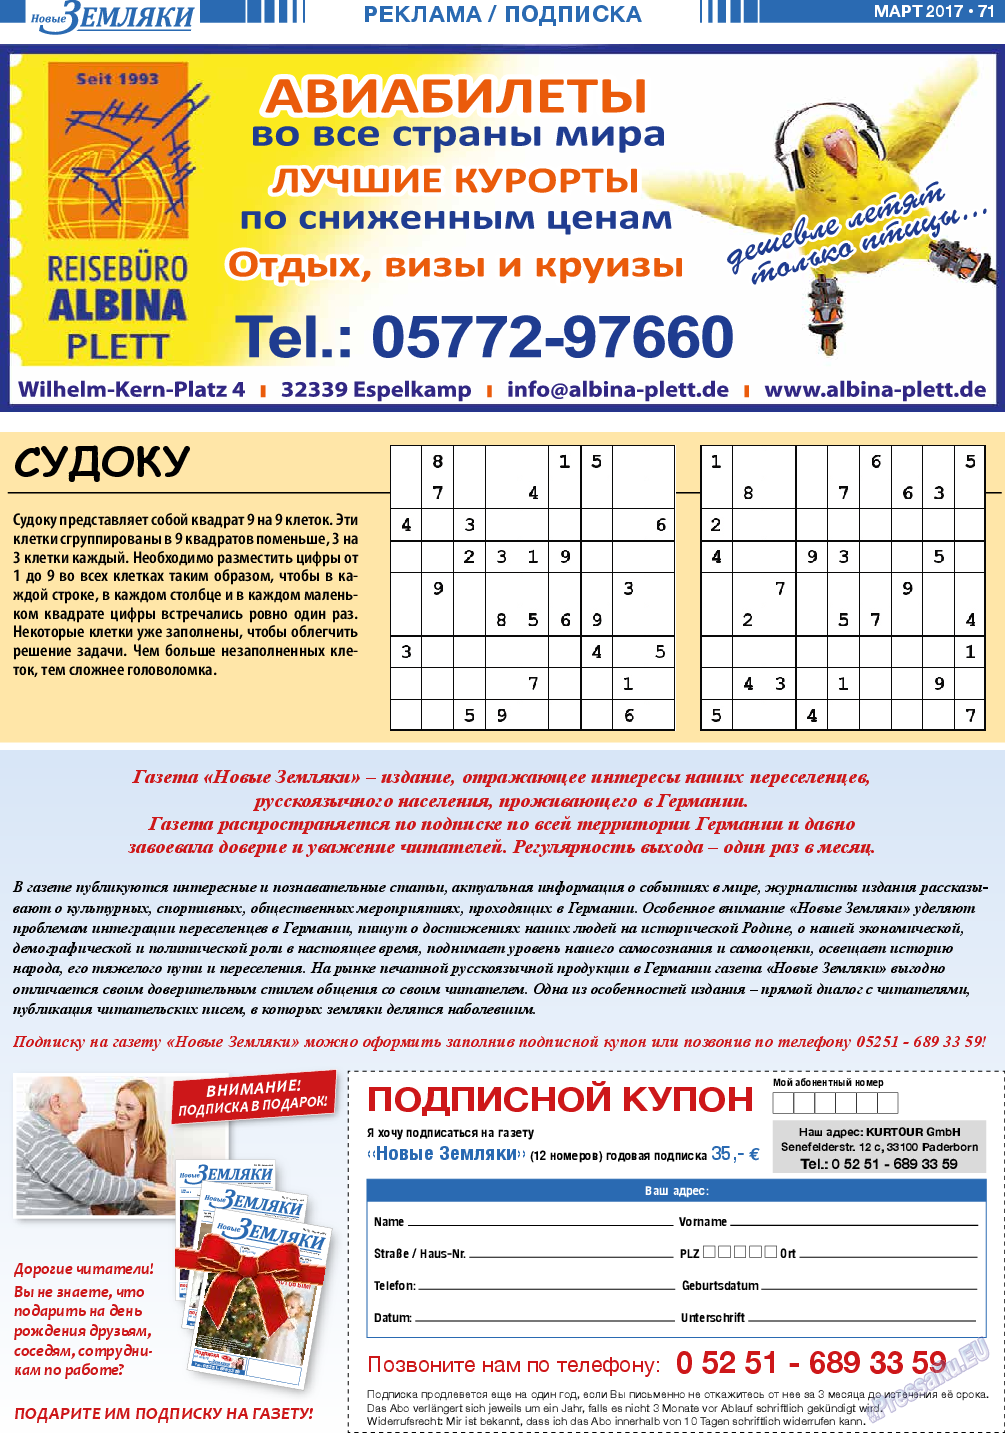 Новые Земляки (газета). 2017 год, номер 3, стр. 71